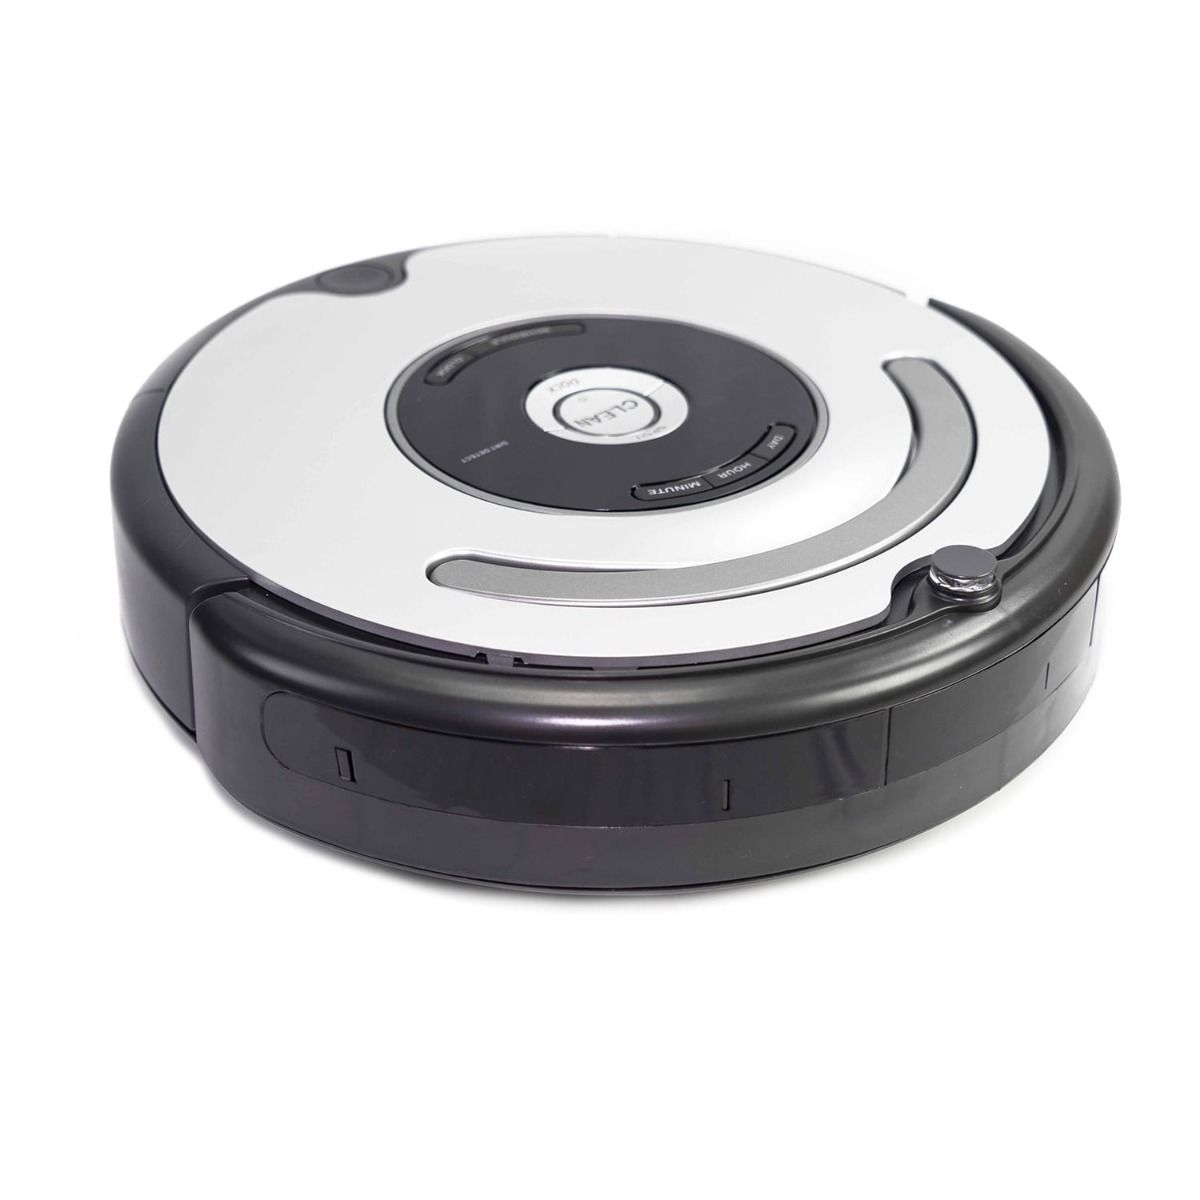 iRobot Roomba 655 Pet Series Robotic Vacuum Cleaner (Renewed) $79.99 + FS